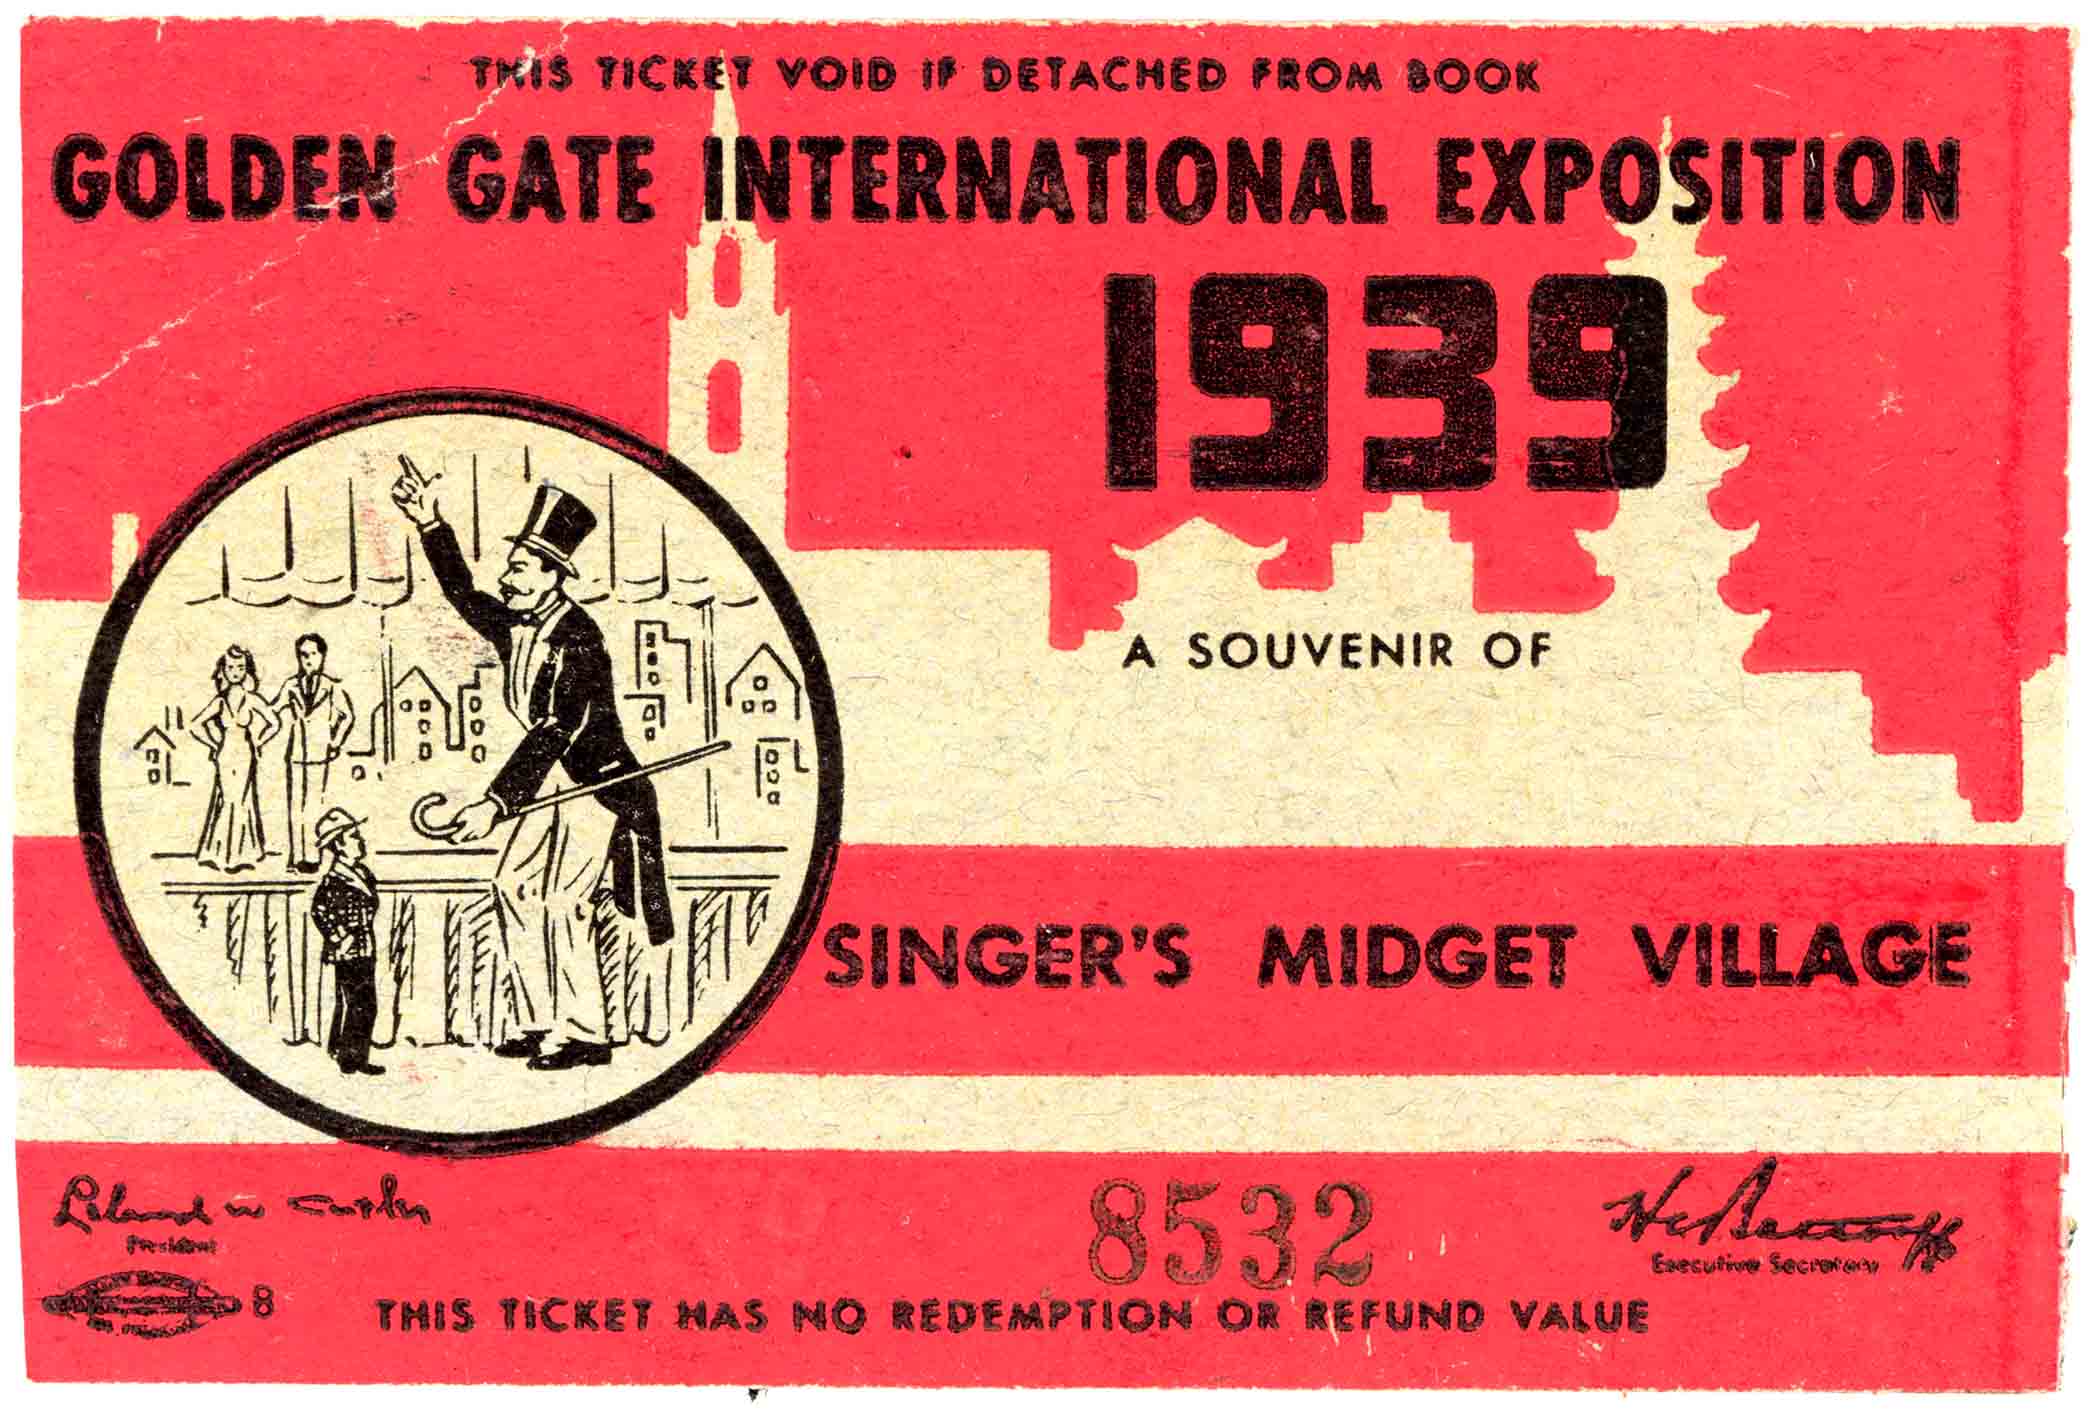 Singer’s Midget Village Ticket